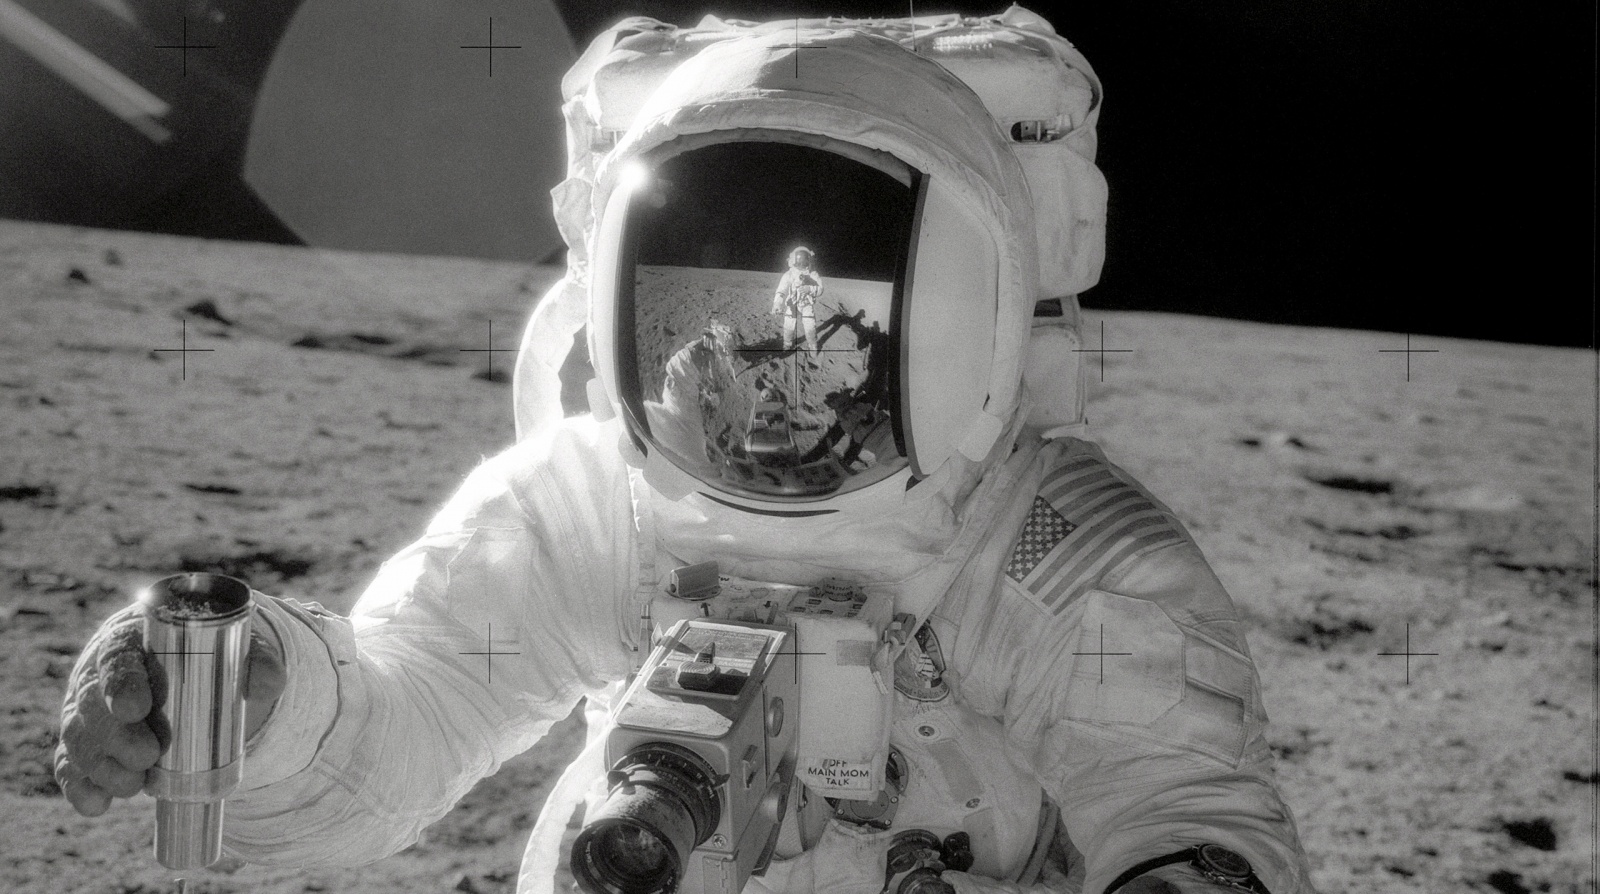 Алан Бин, пилот лунного модуля Аполлона-12, держит контейнер, заполненный лунной почвой. Фото сделал Чарльз Конрад-младший, командир экипажа